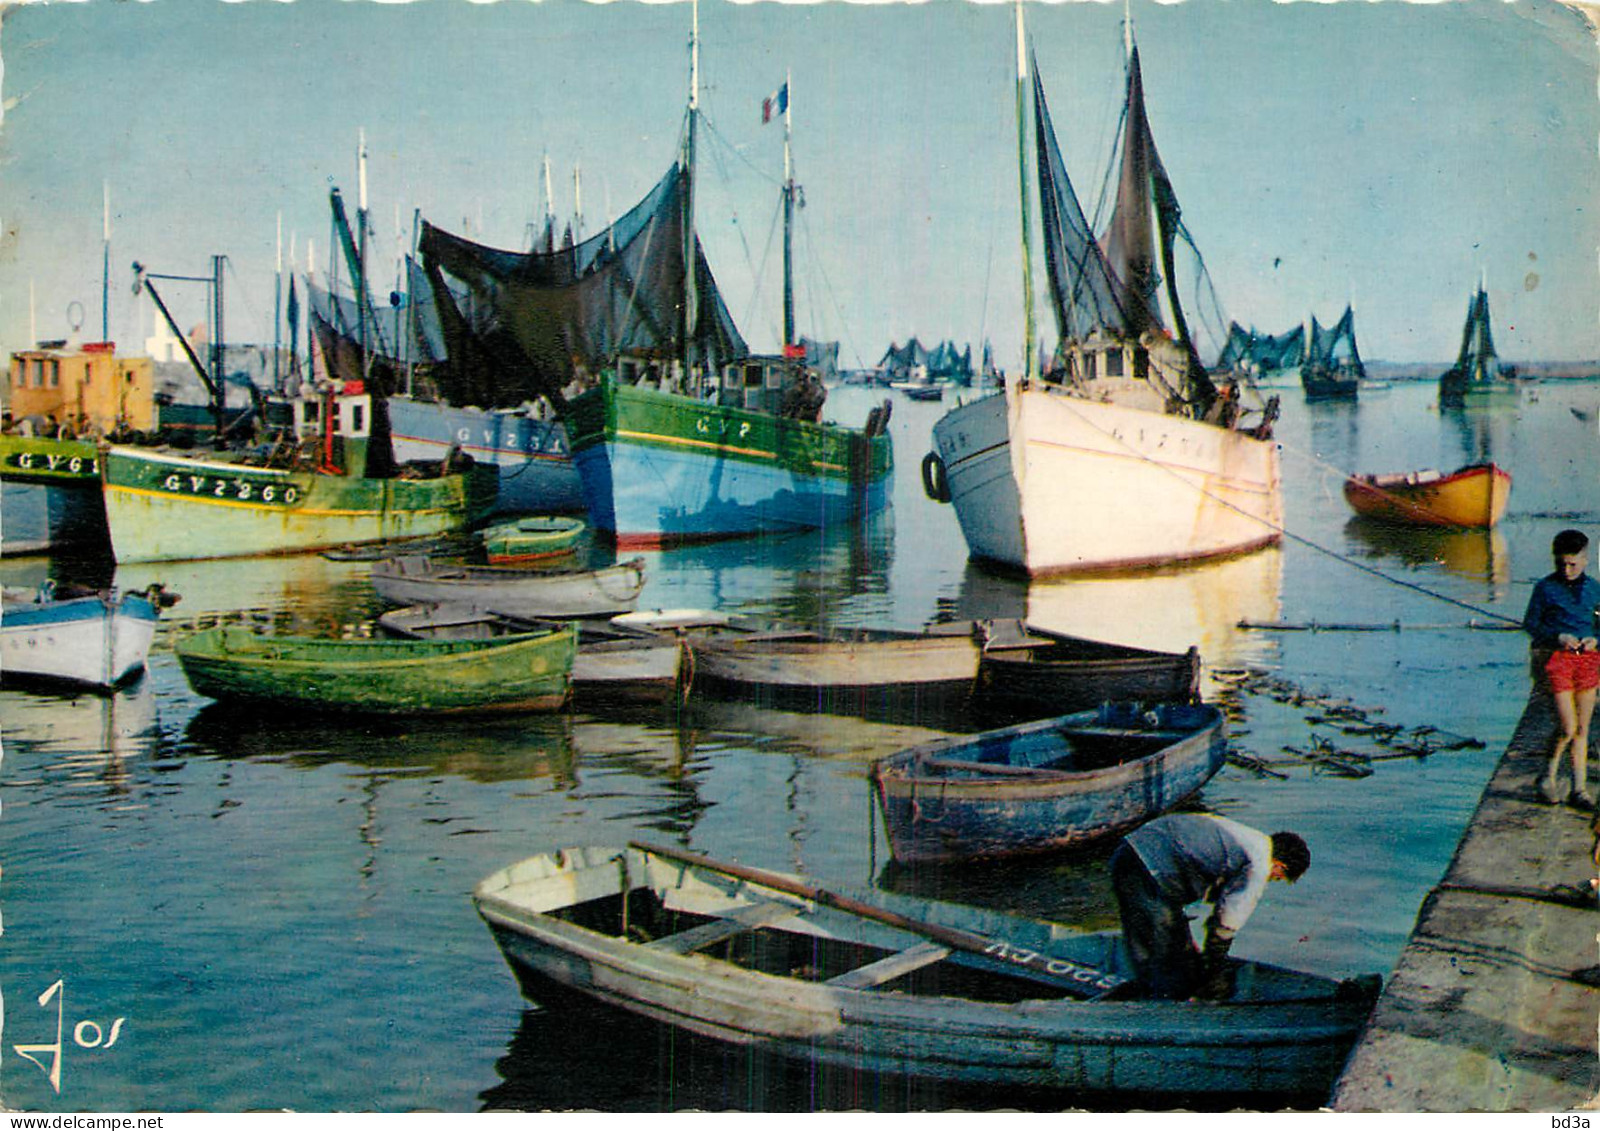  BATEAUX DE PECHES EN BRETAGNE - Pesca